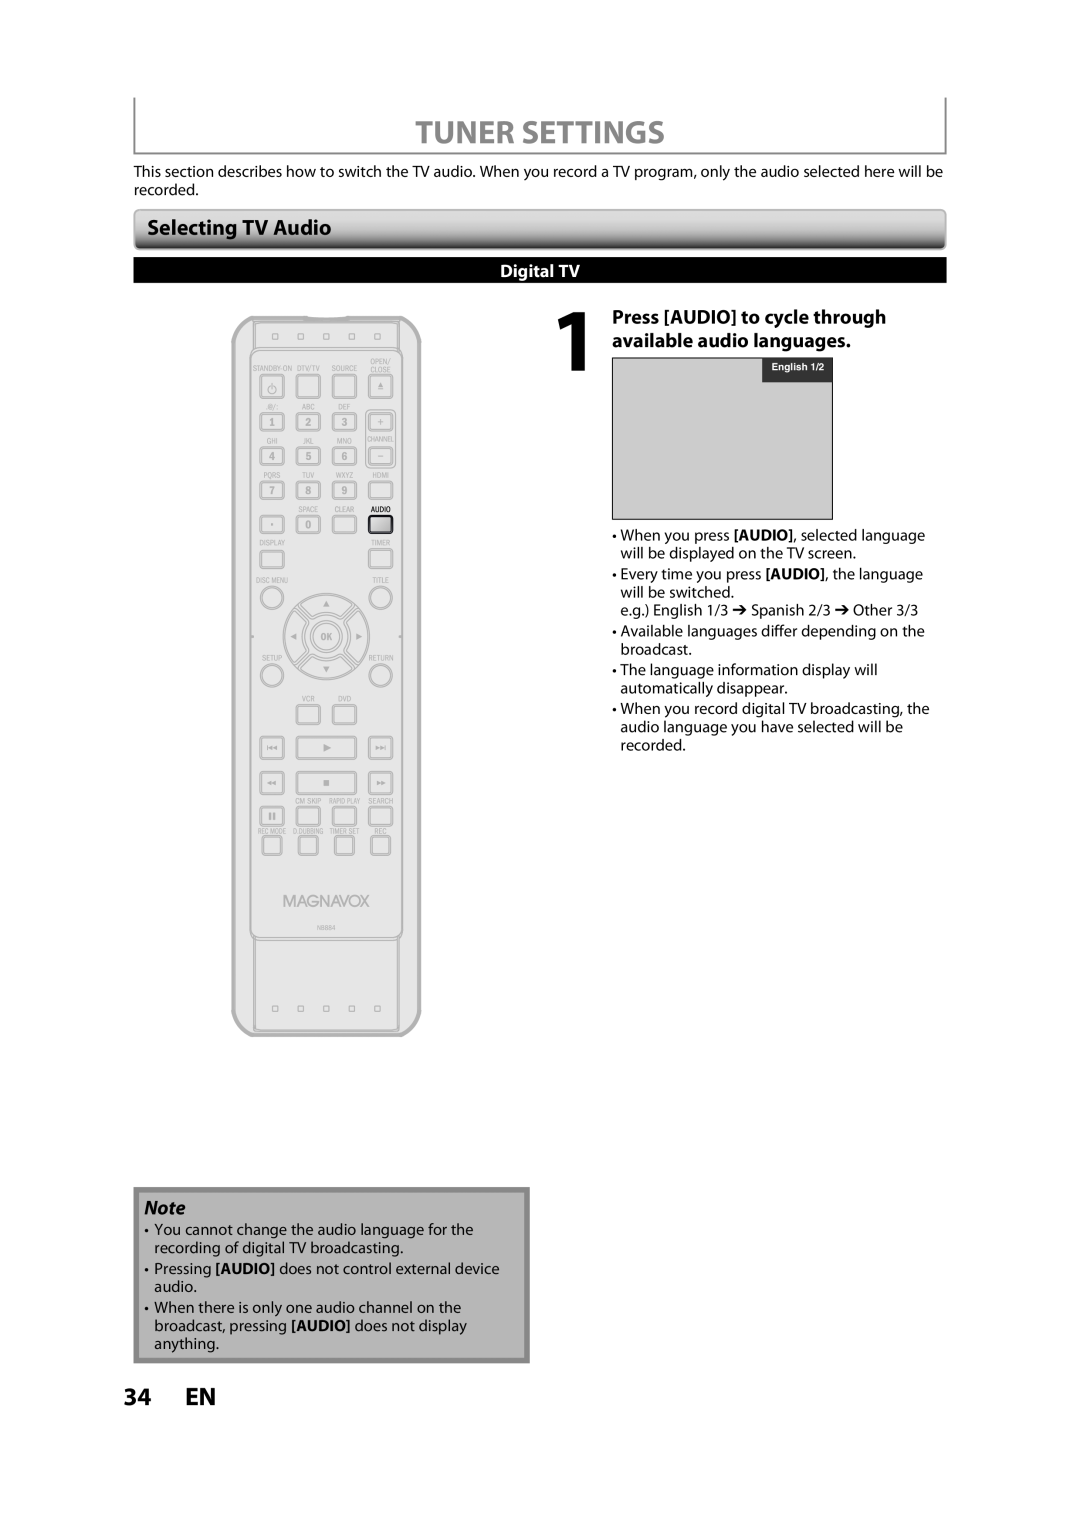 FUNAI ZV457MG9 A owner manual Tuner Settings, 34 EN, Selecting TV Audio, Digital TV 